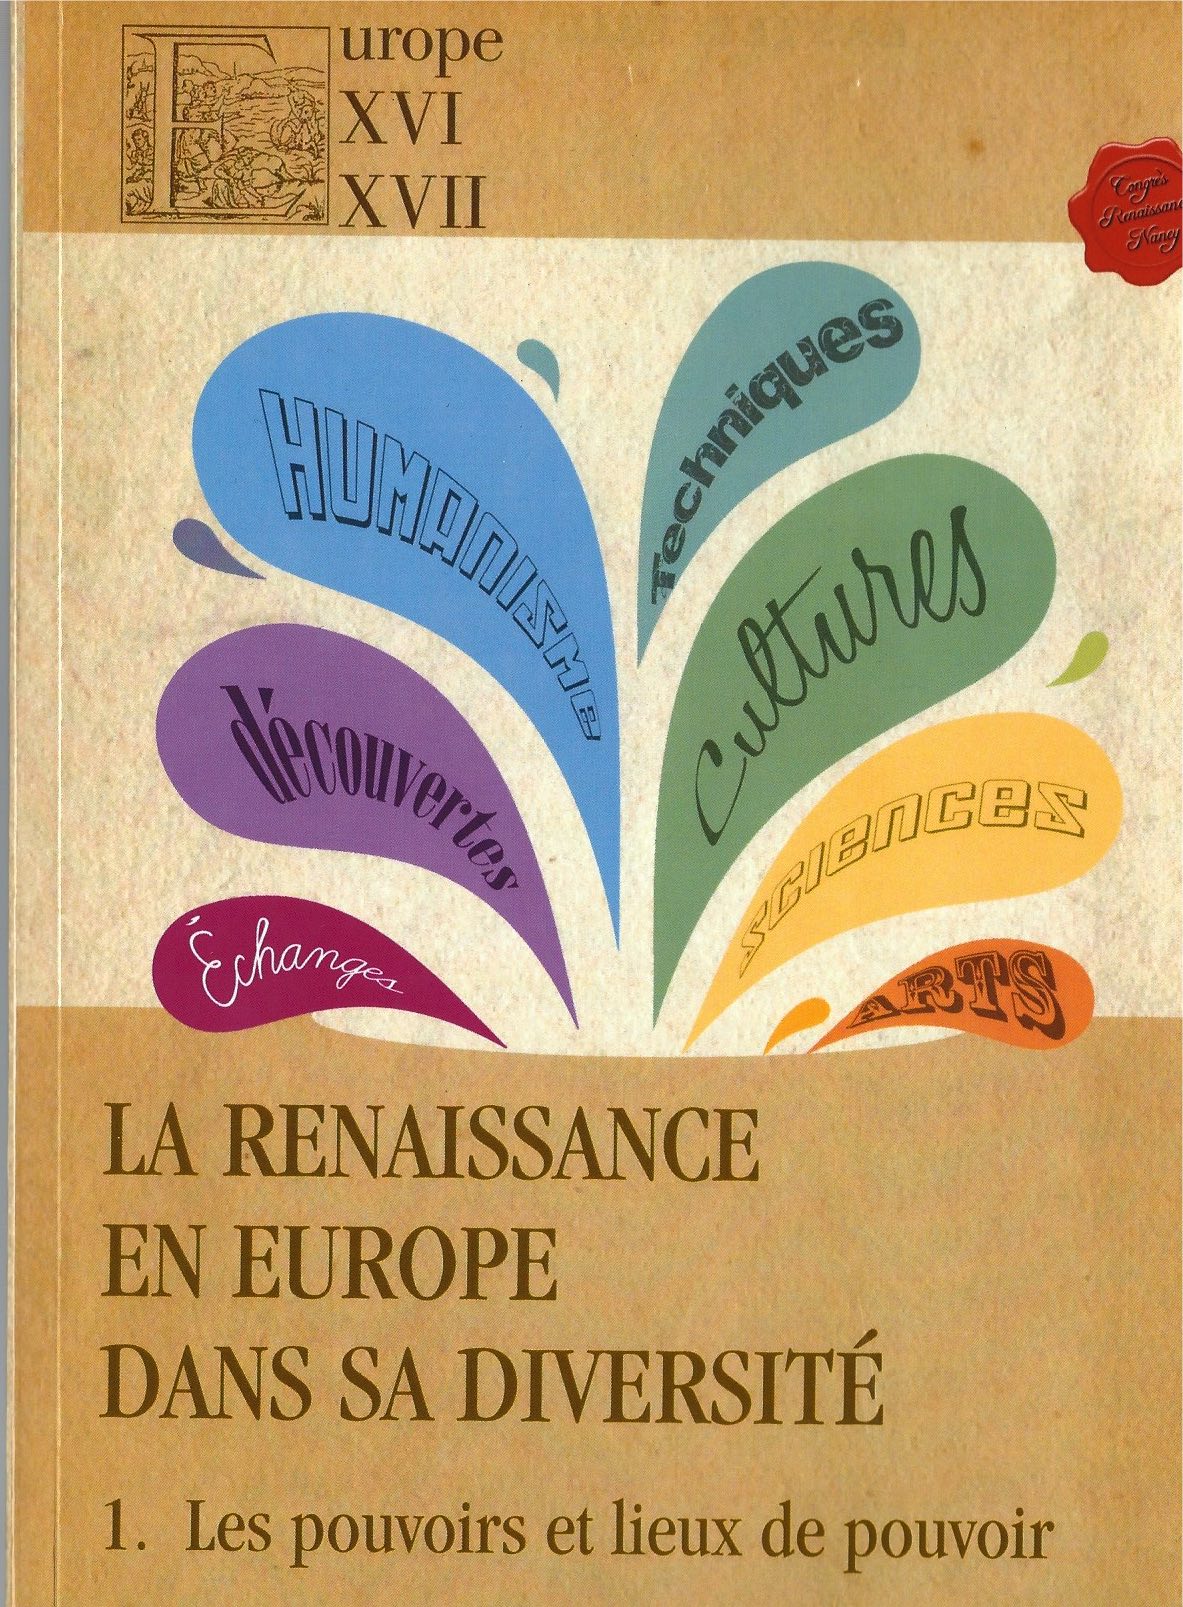 1. Europe XVI-XVII